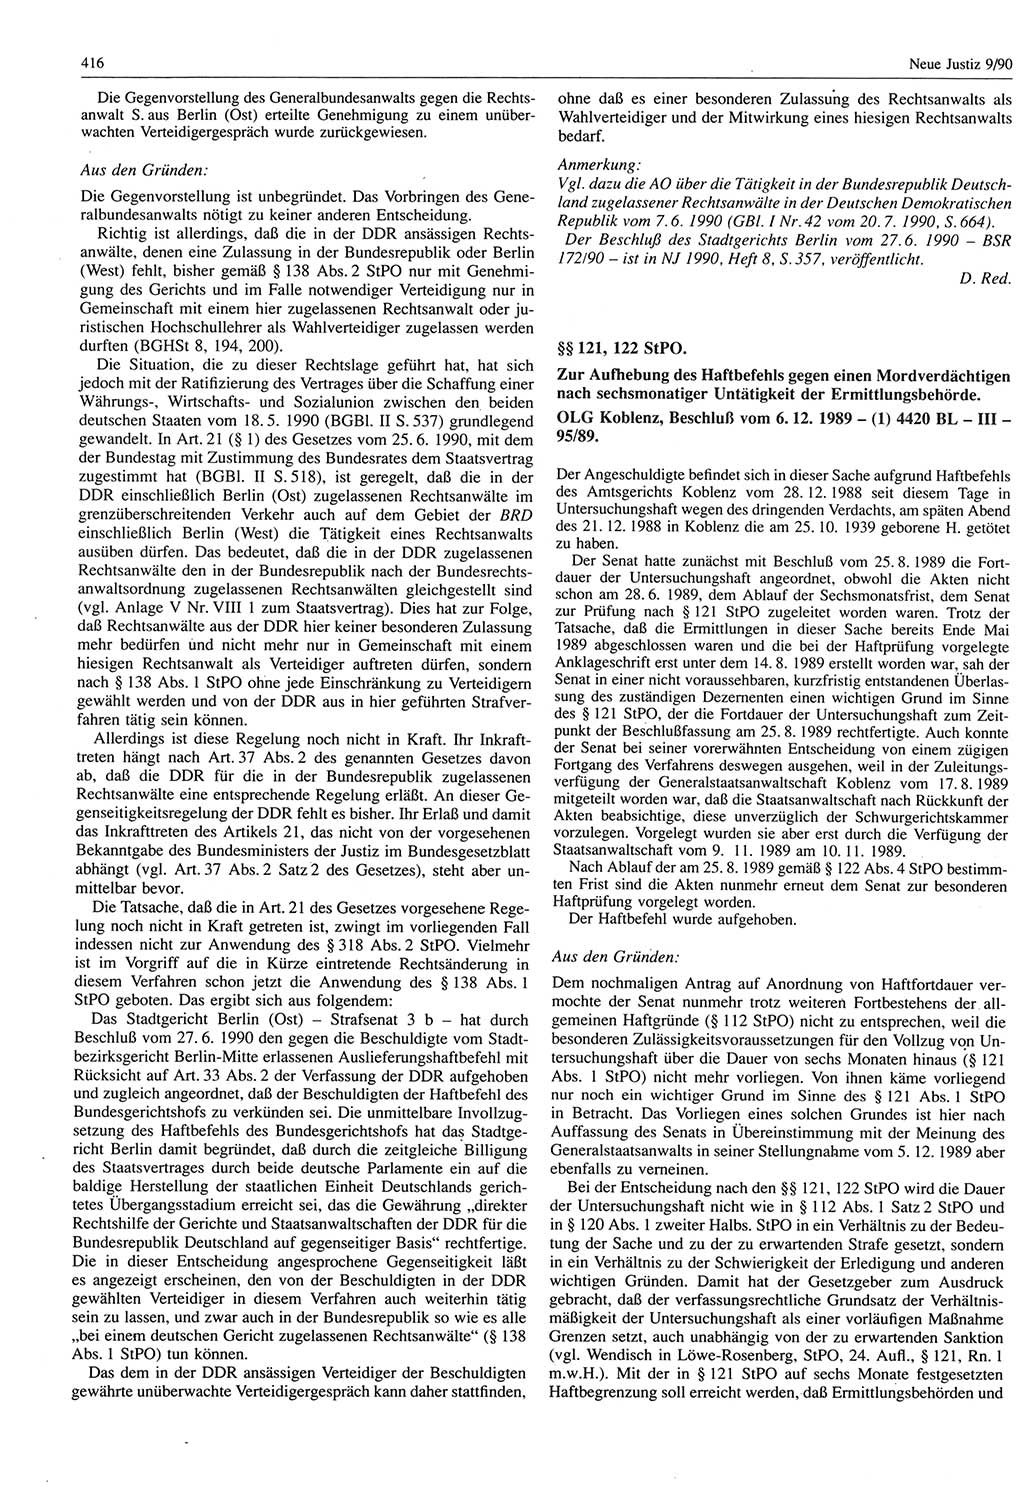 Neue Justiz (NJ), Zeitschrift für Rechtsetzung und Rechtsanwendung [Deutsche Demokratische Republik (DDR)], 44. Jahrgang 1990, Seite 416 (NJ DDR 1990, S. 416)